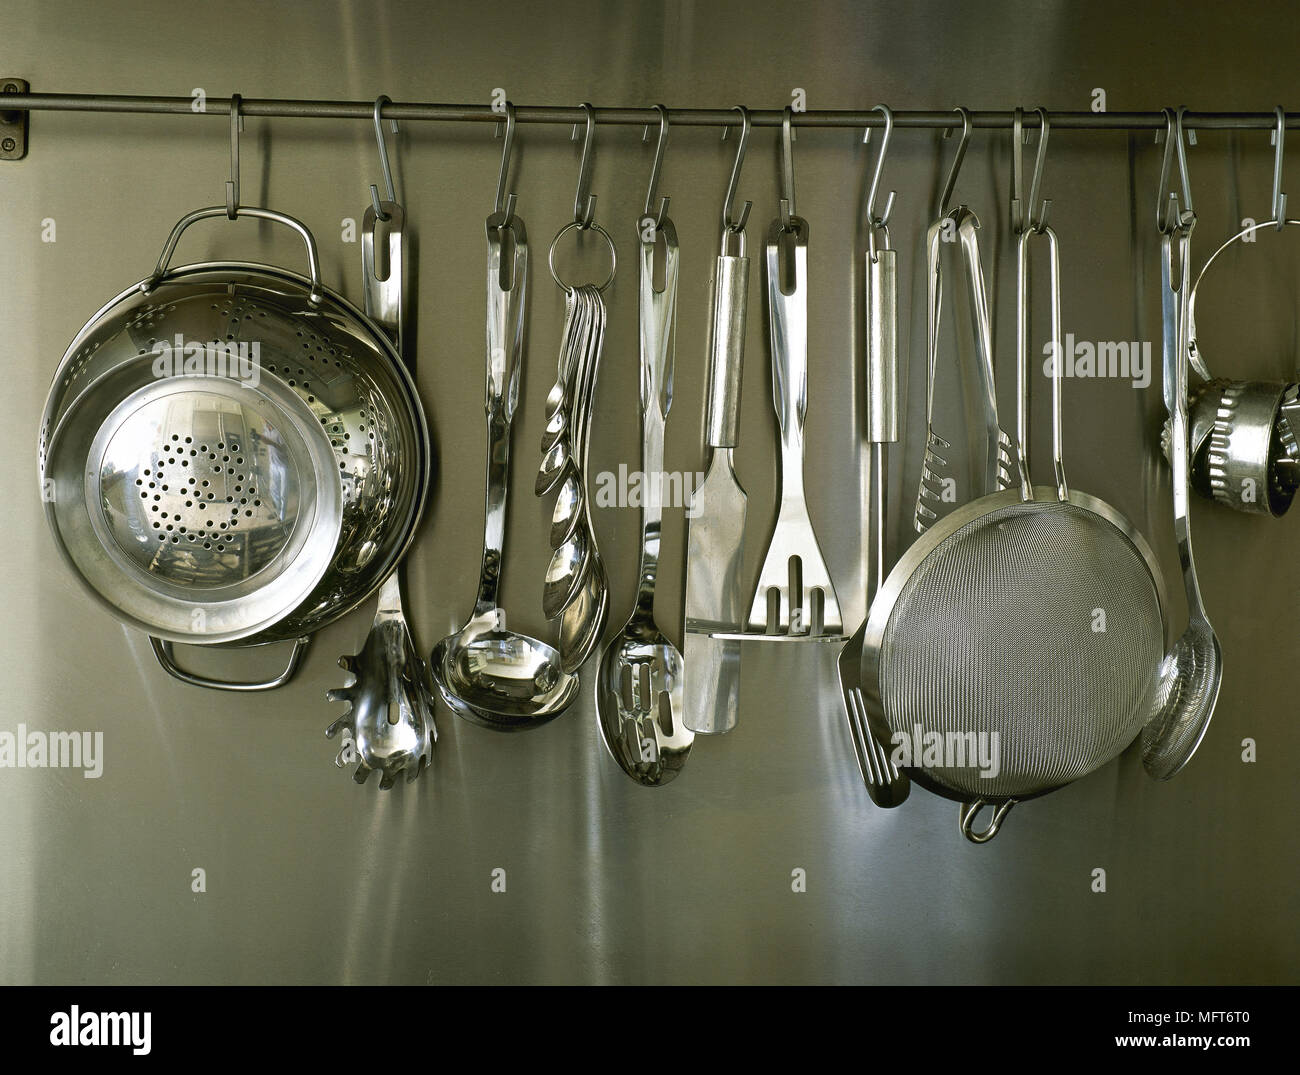 Cucina particolare di acciaio inossidabile splashback e utensili da appendere Foto Stock